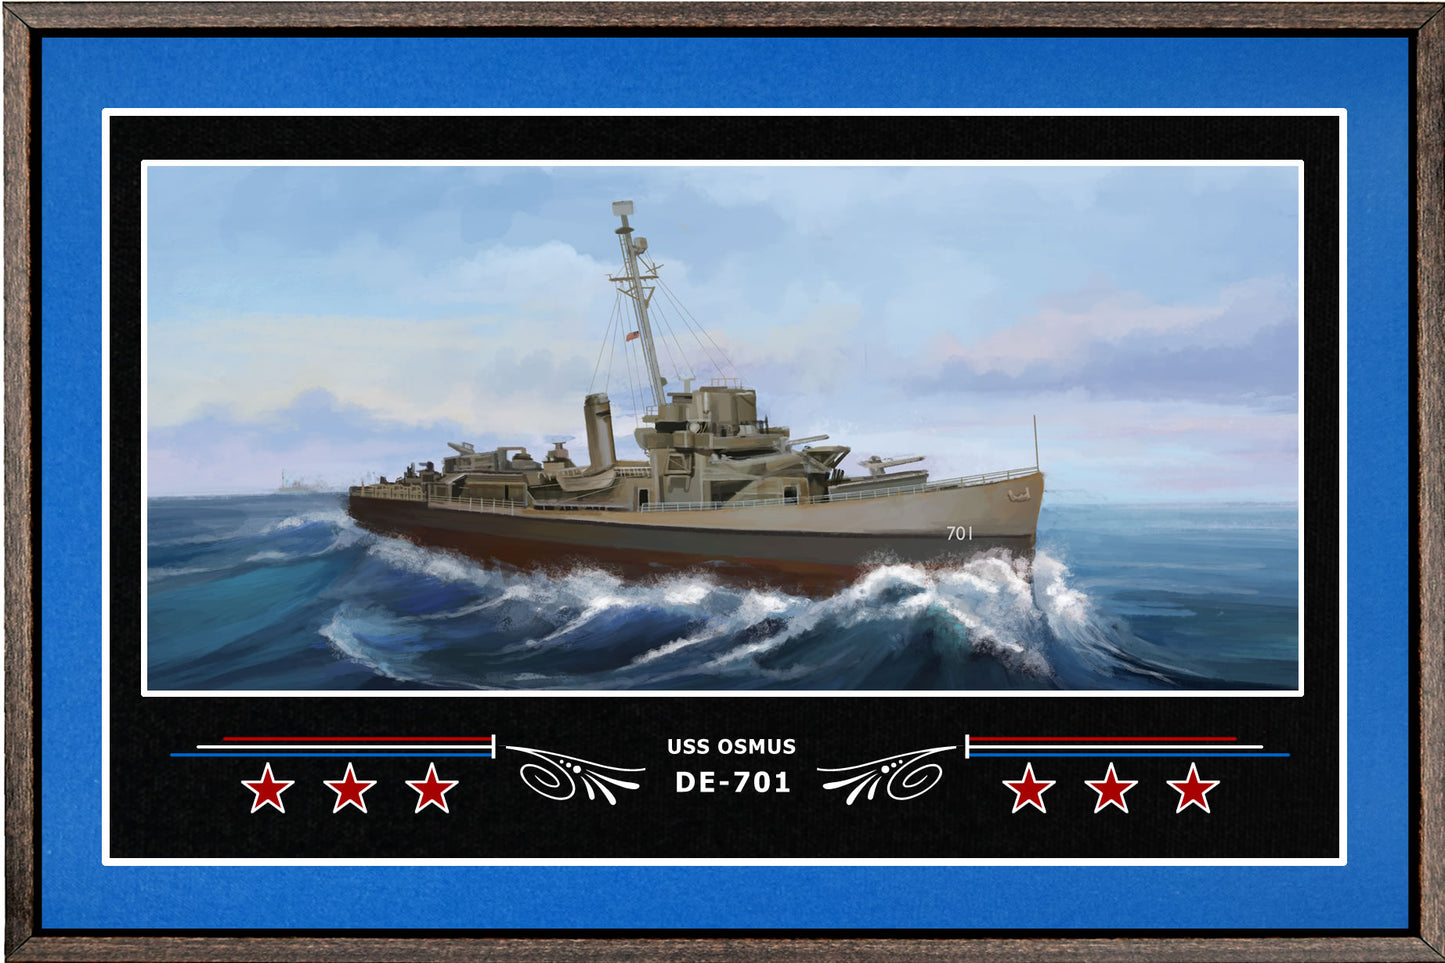 USS OSMUS DE 701 BOX FRAMED CANVAS ART BLUE